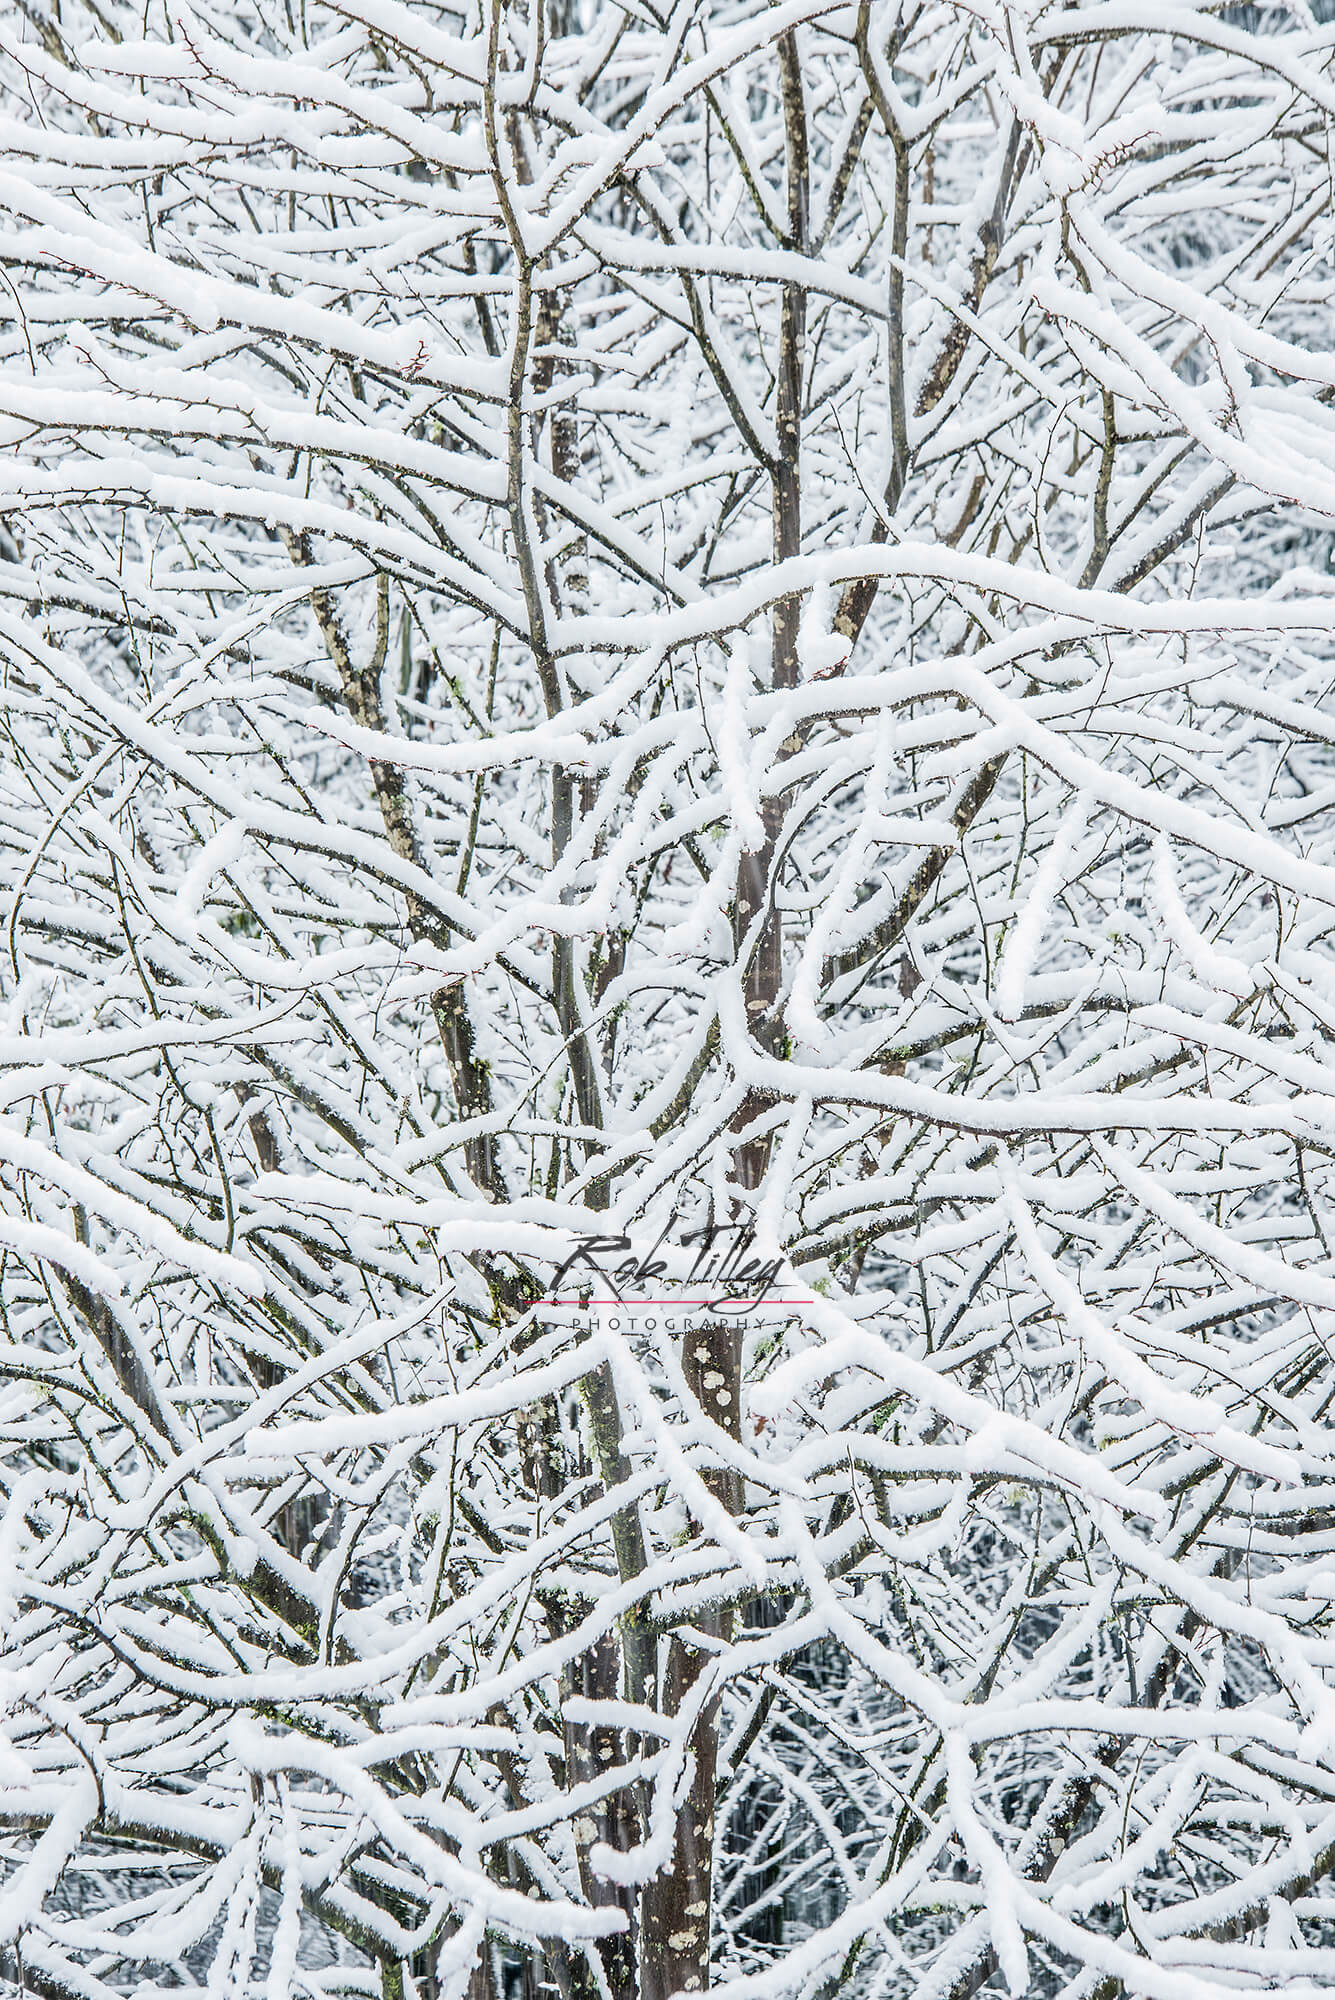 Snowy Tree II